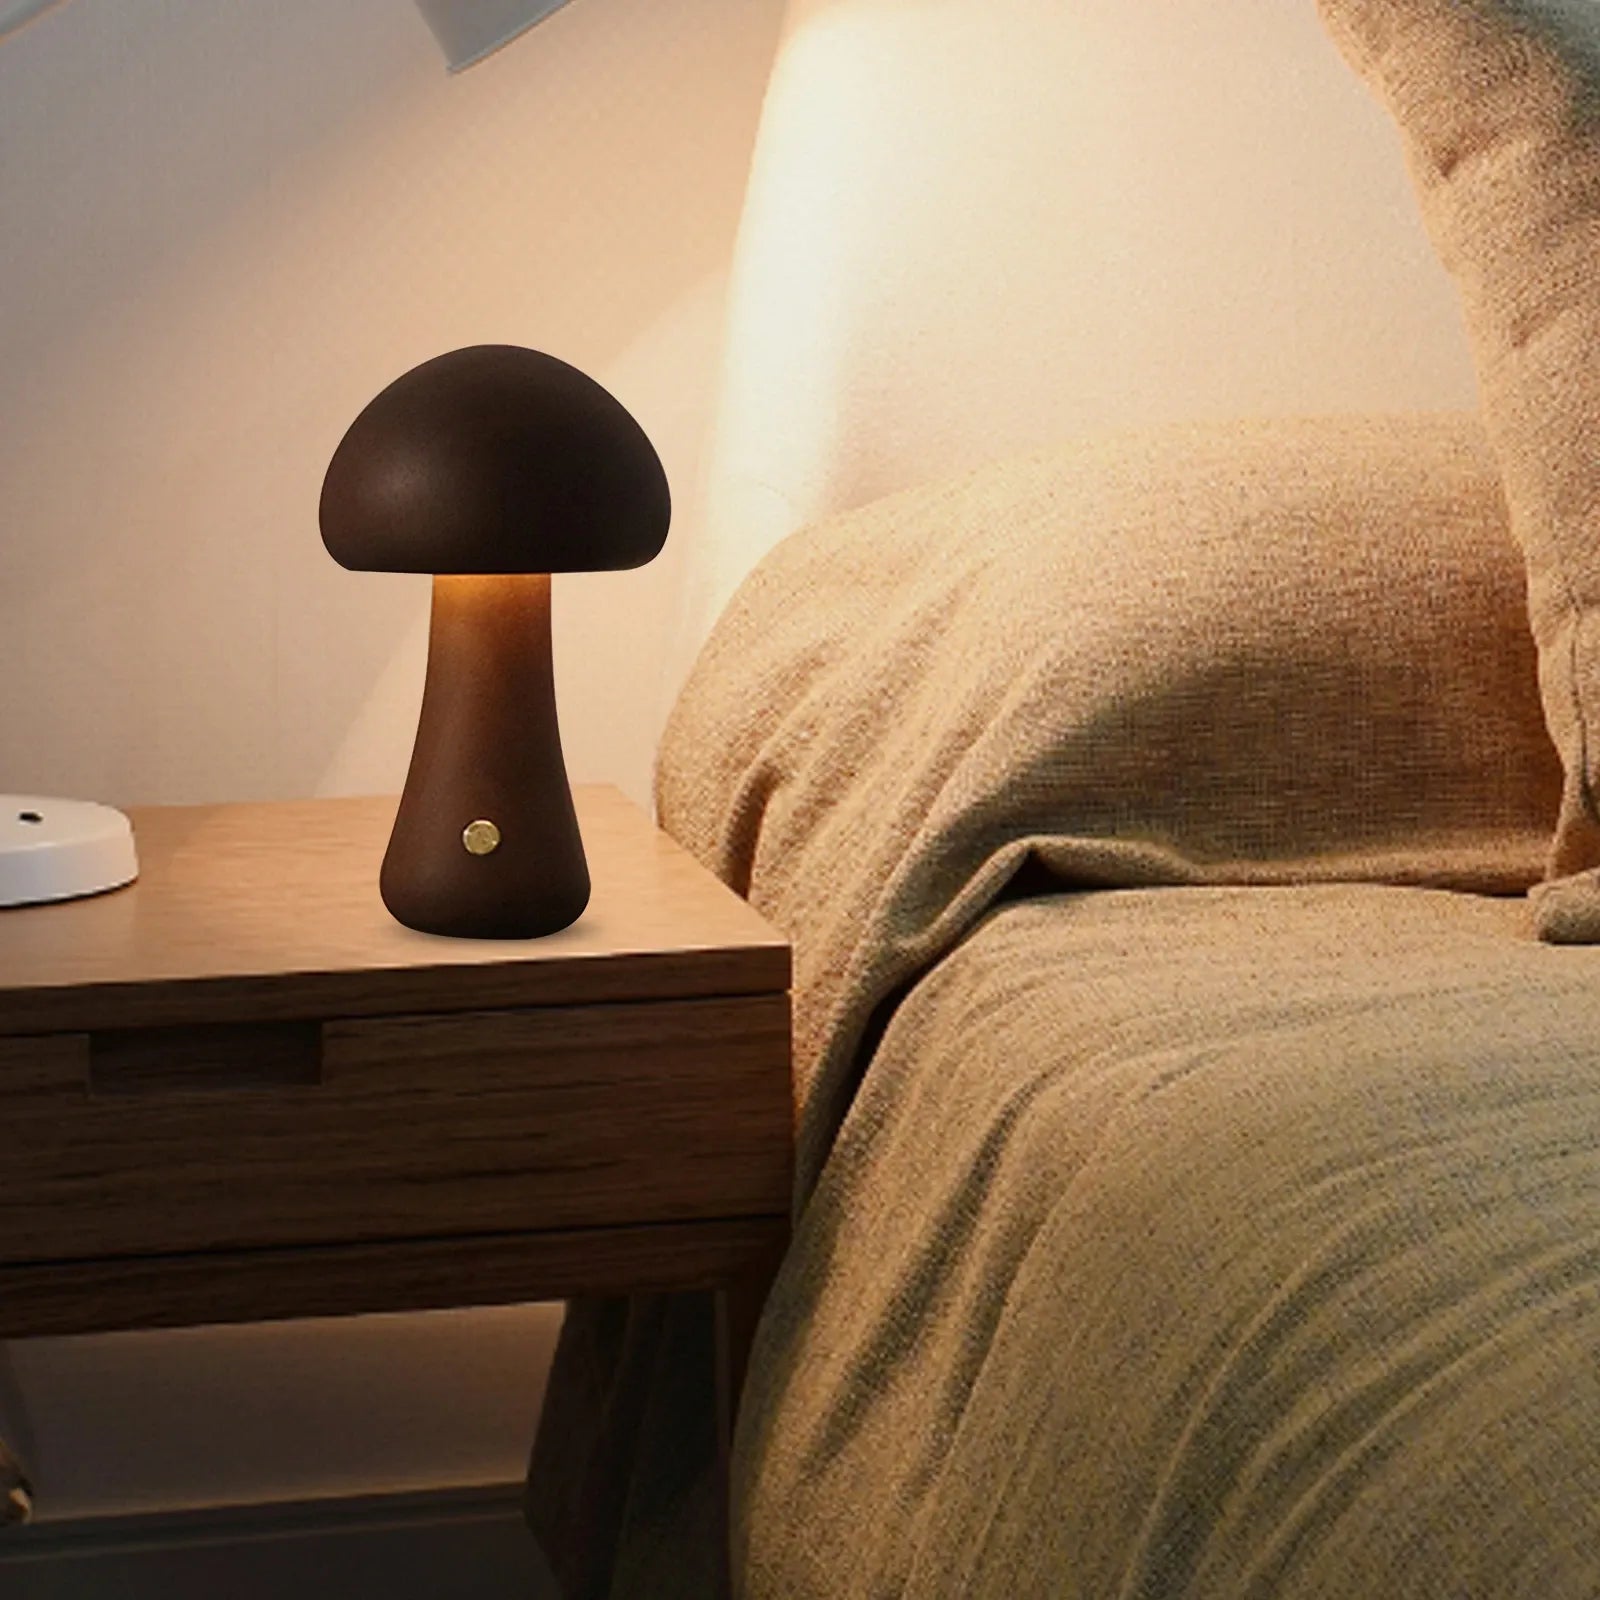 لطيف الفطر LED ضوء الليل مصباح طاولة بجانب السرير الخشبي مع مفتاح اللمس غرفة الديكور مصباح الفطر البيئي عالي المستوى